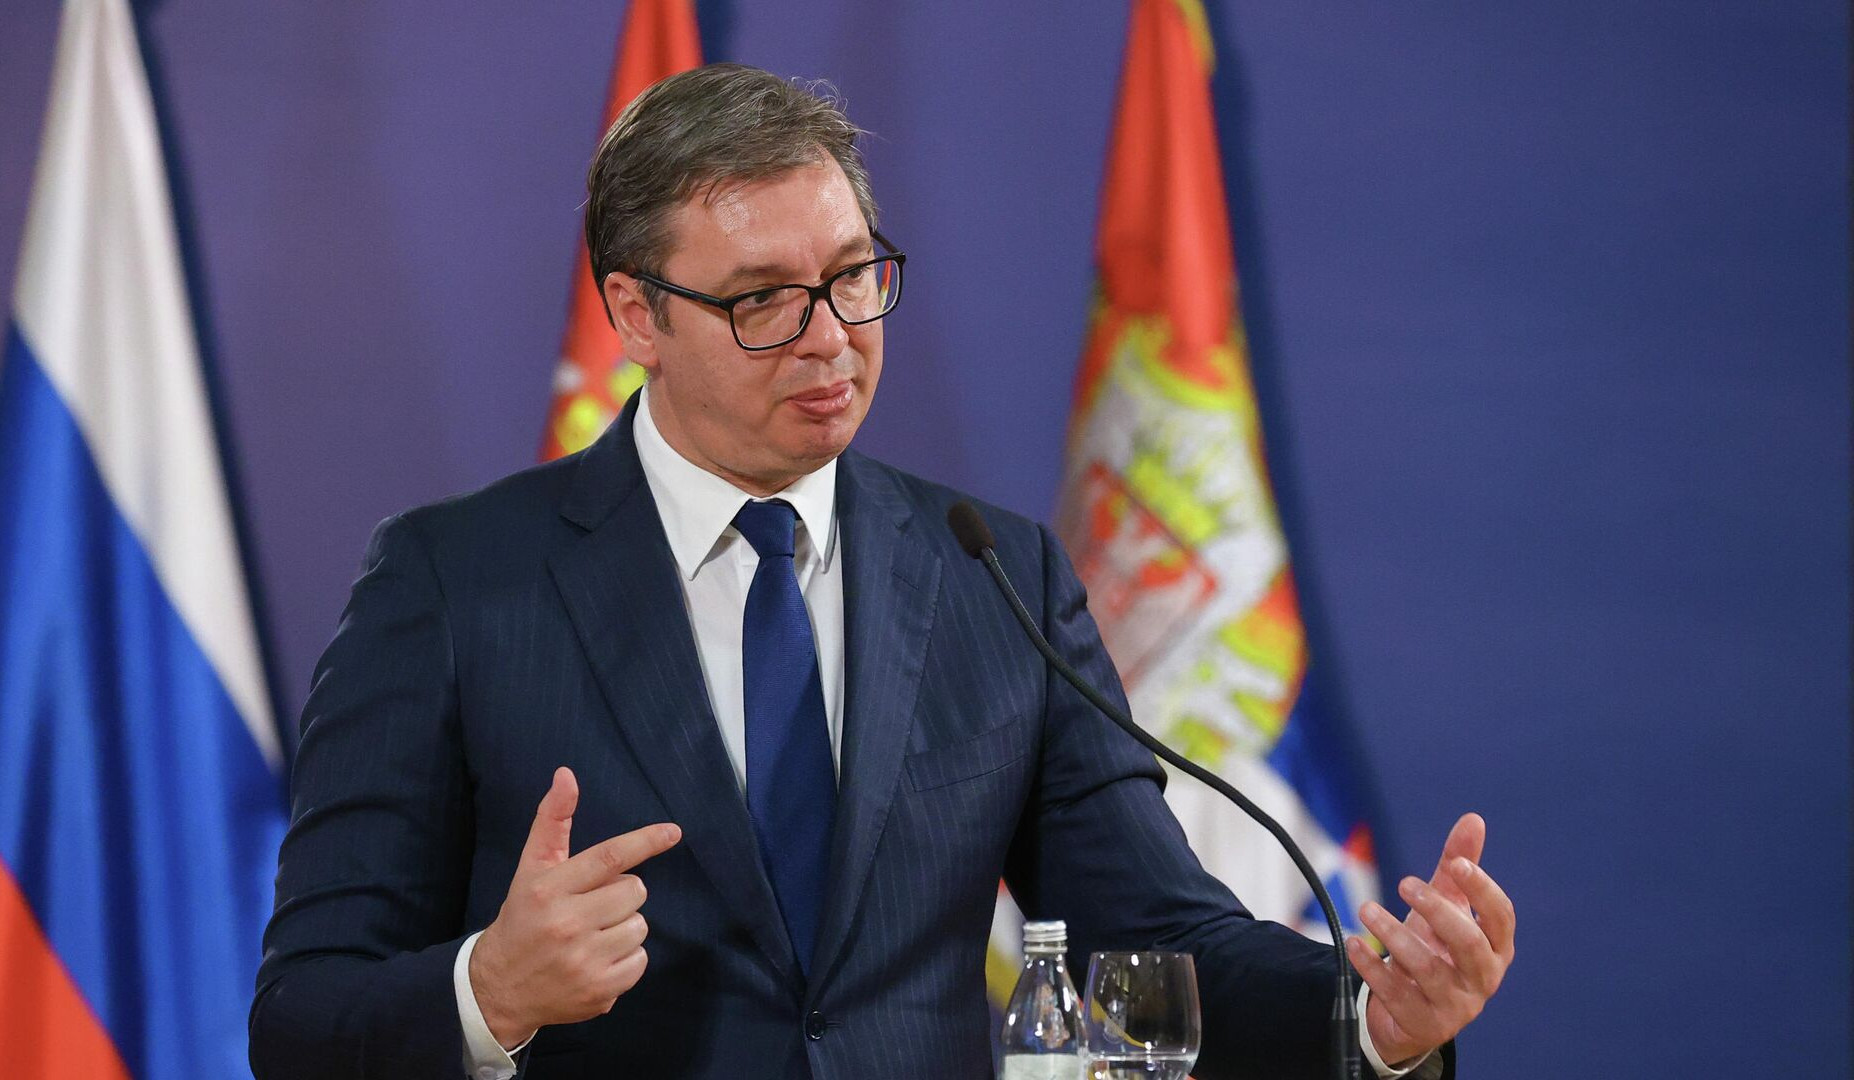 Serbia will not join NATO, might restore conscription: Vucic